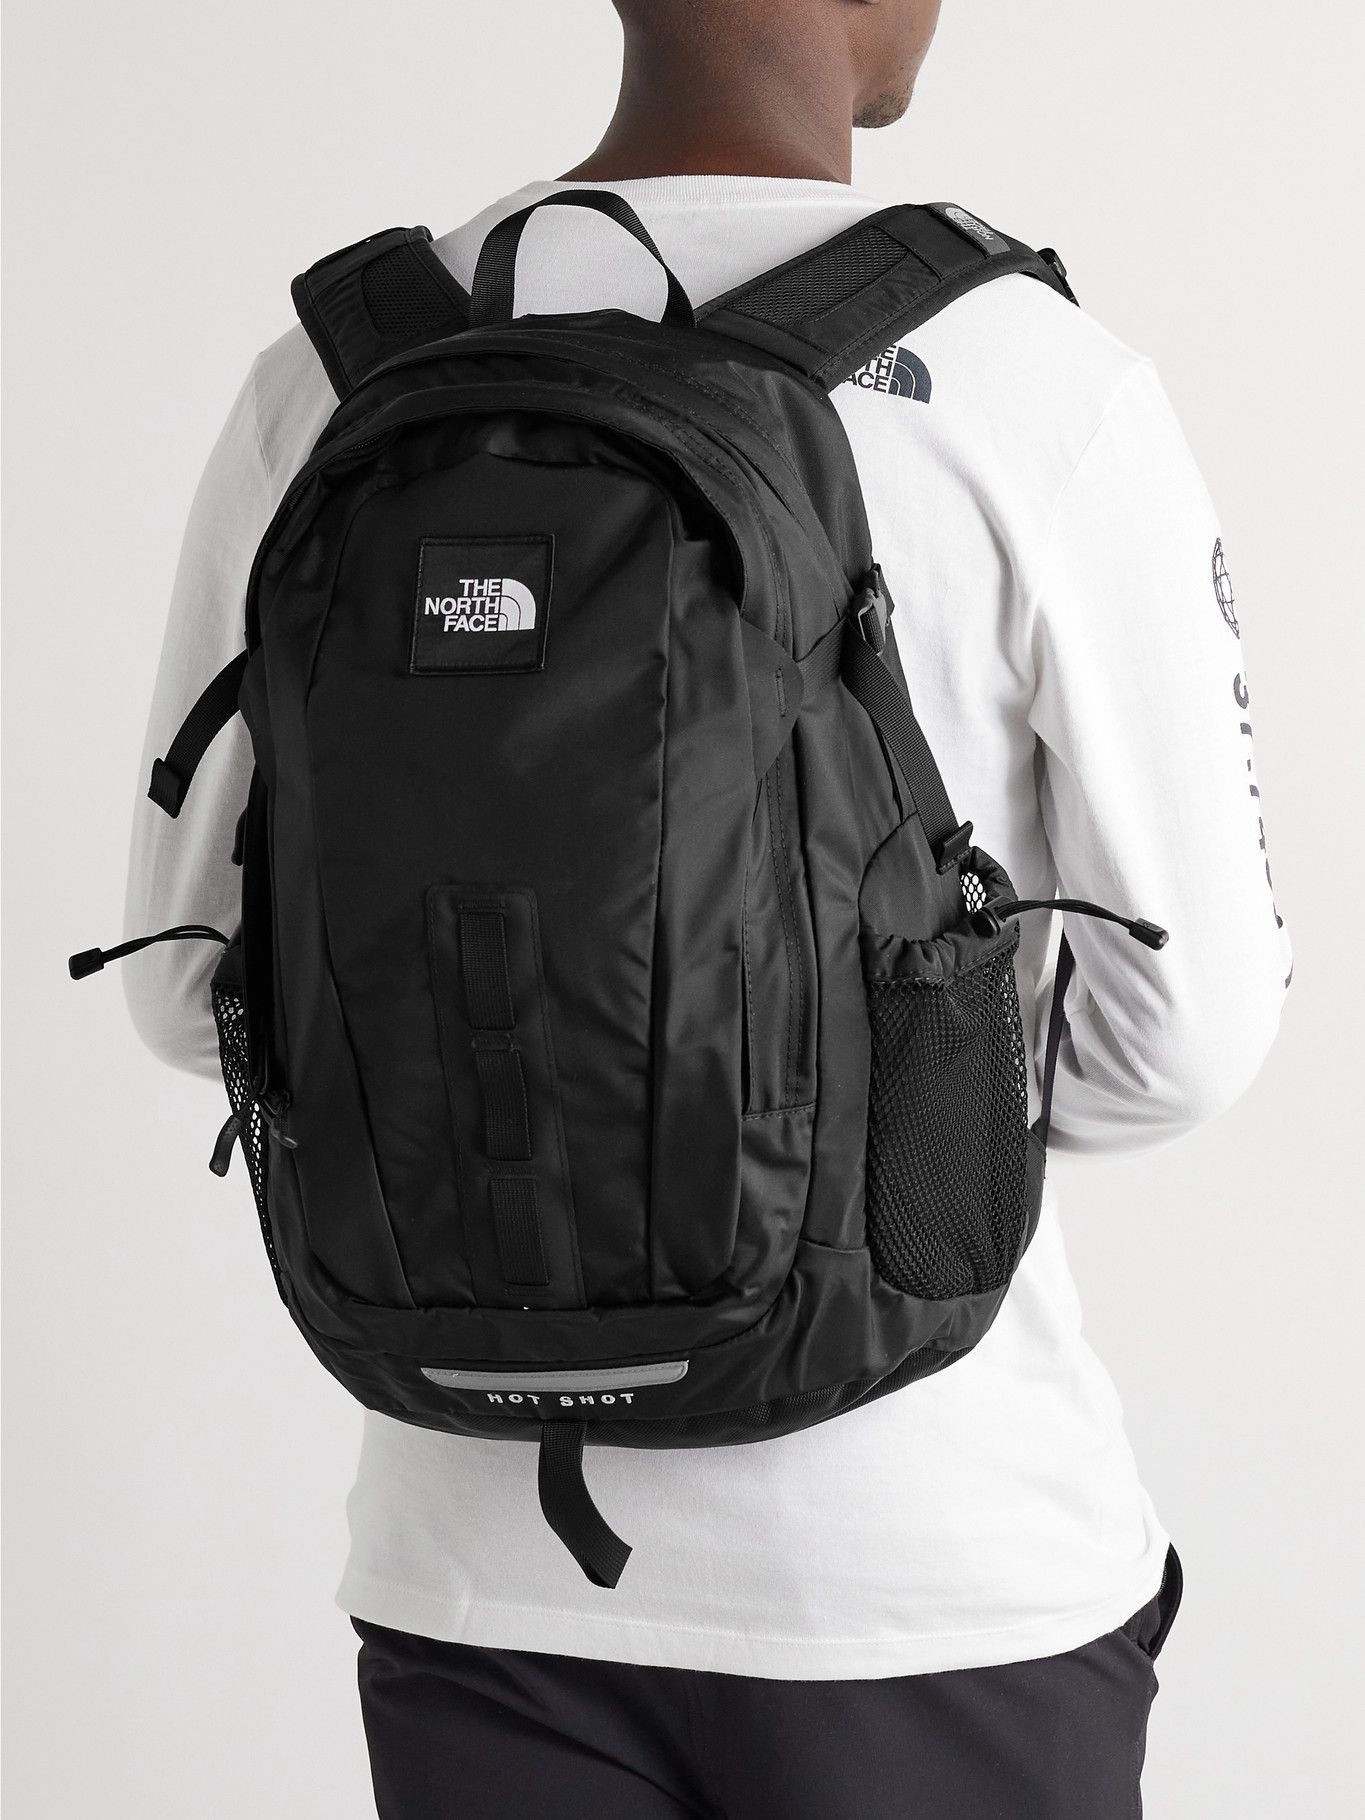 Best book bag / backpack for school? : r/onebag